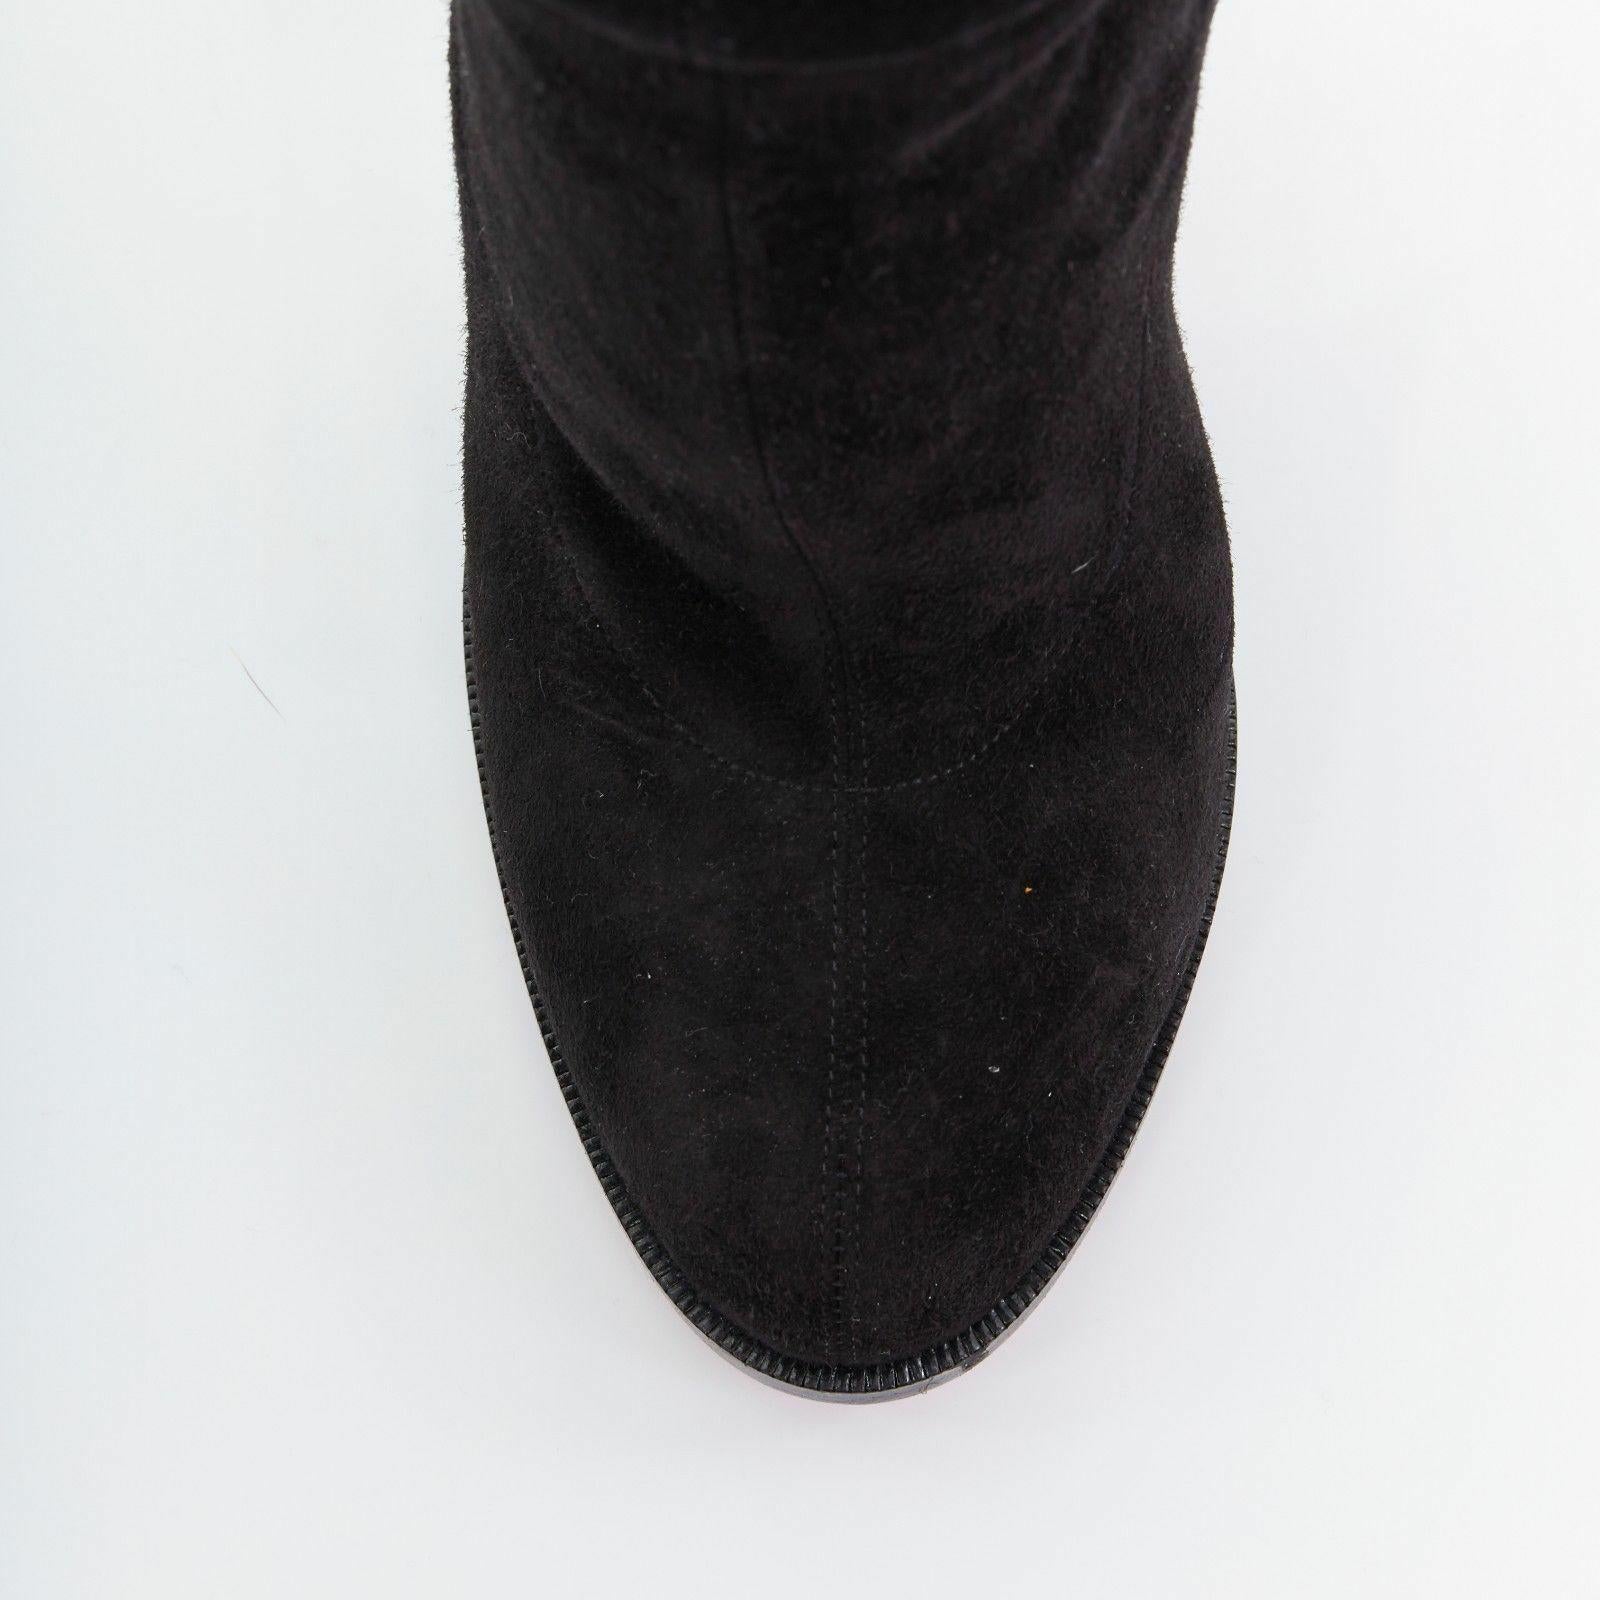 new CHRISTIAN LOUBOUTIN Verusch 100 black suede high heel over knee boots EU39 1